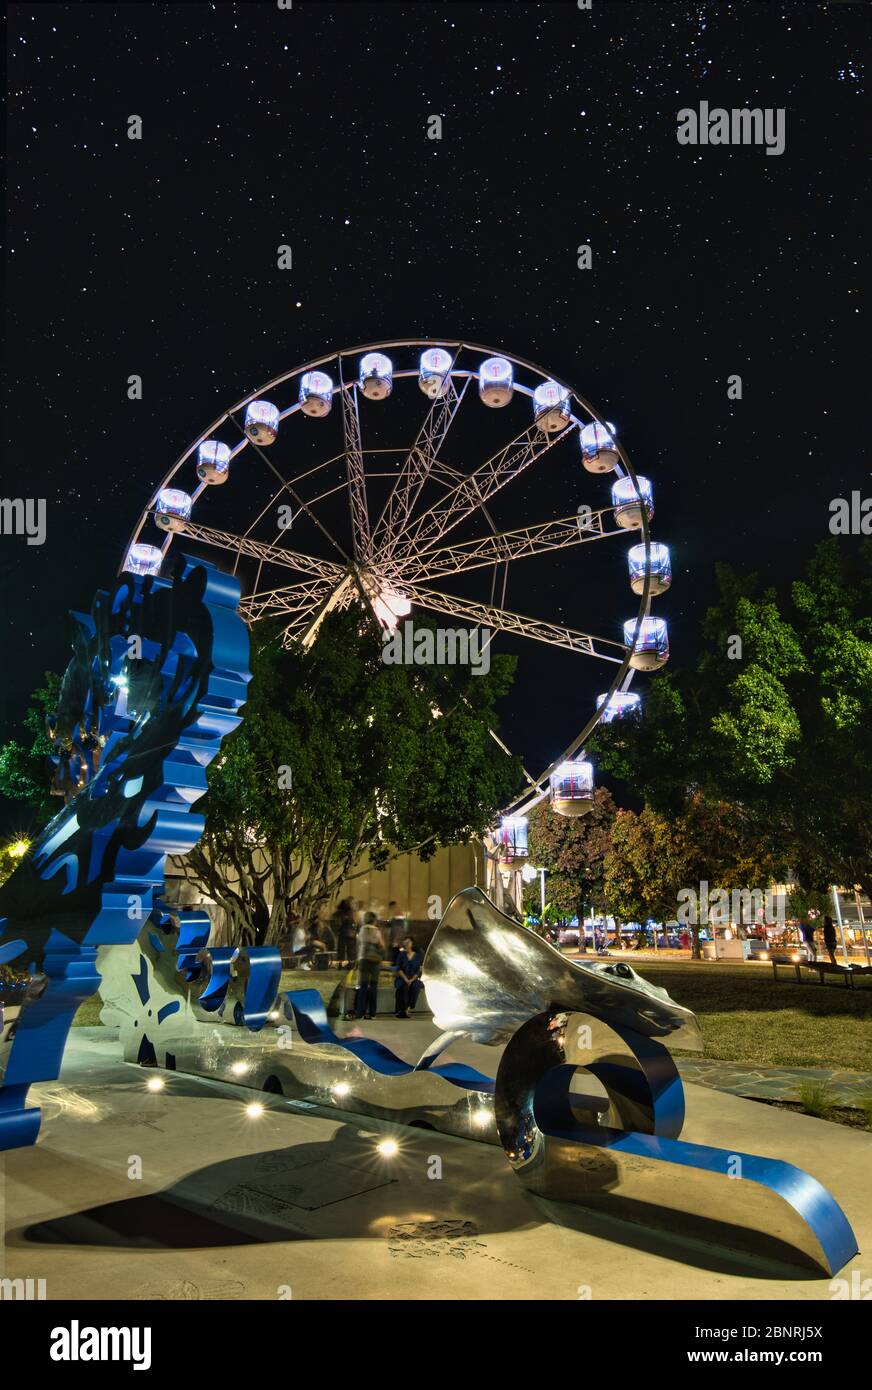 Die Reef Eye Riesenrad-Attraktion und die spektakuläre Kunstinstallation auf der Esplanade in Cairns, Queensland, Australien. Stockfoto